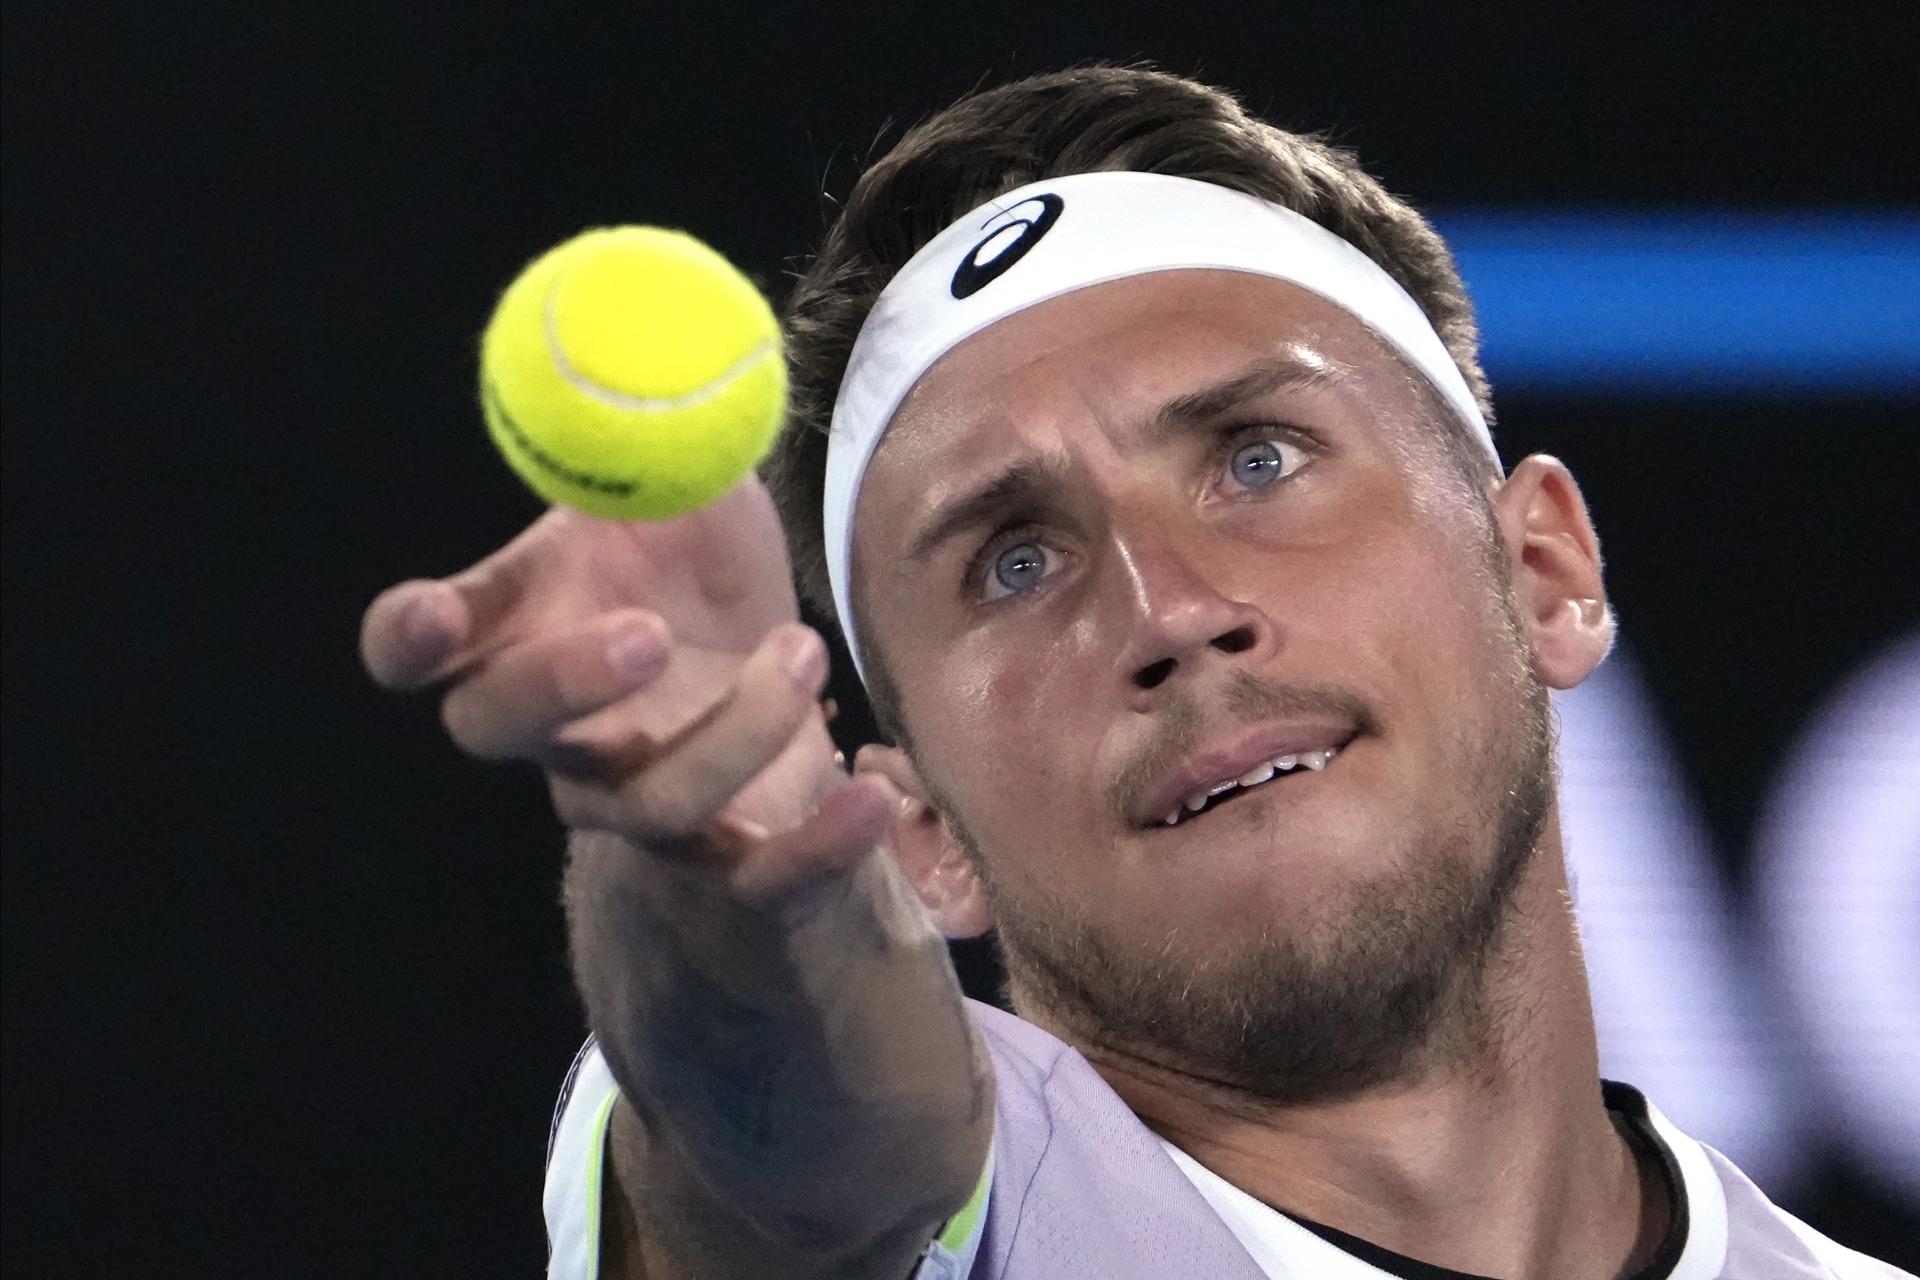 Molčan s Čechom Lehečkom postúpili do osemfinále štvorhry na Australian Open